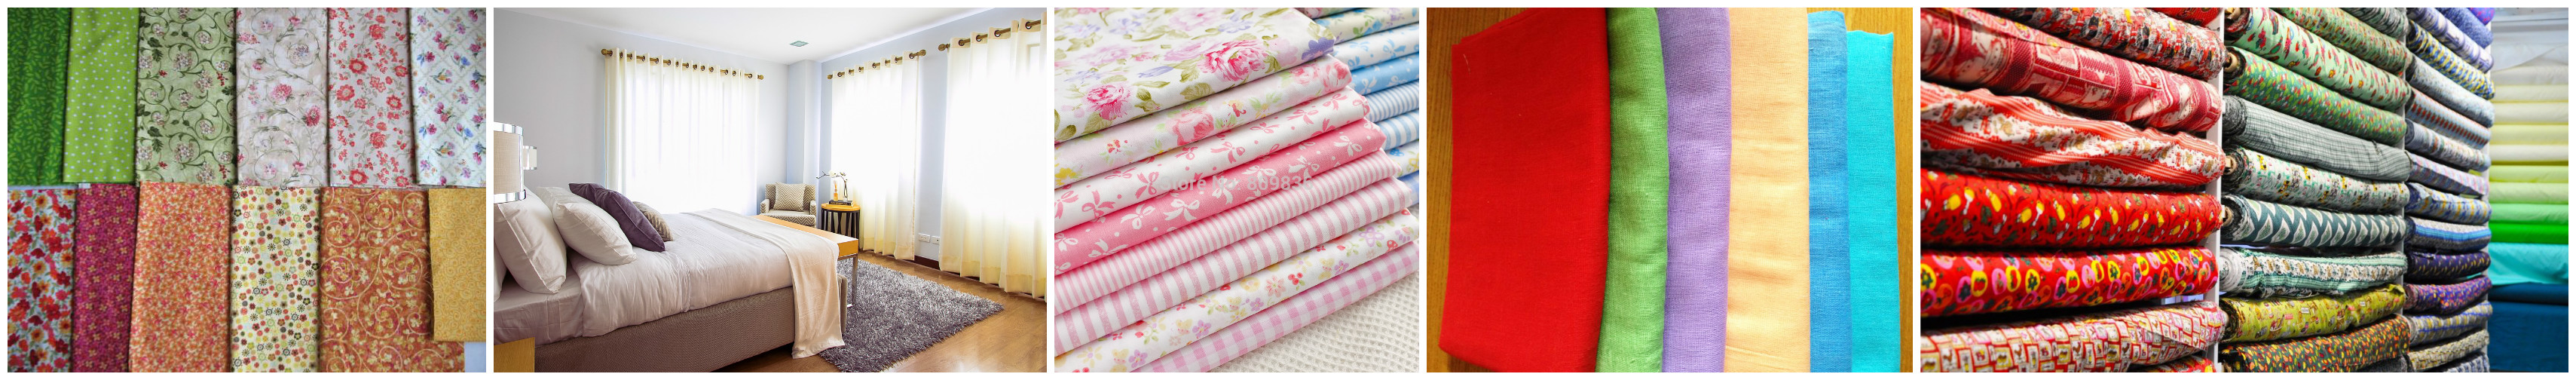 Виды ткани для постельного белья: какую выбрать